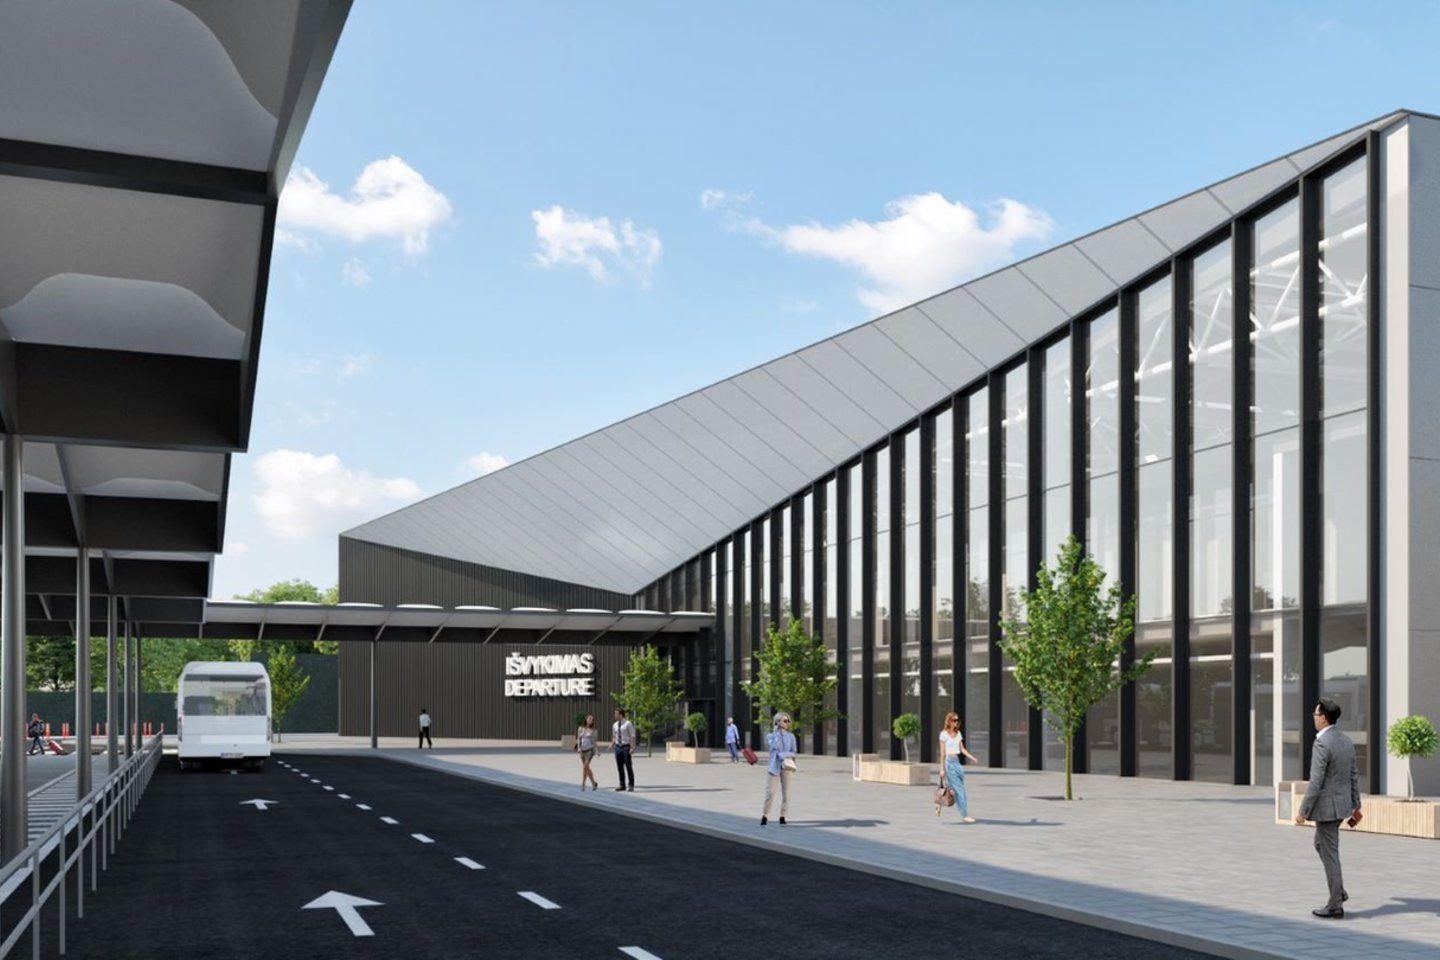 Vilniaus oro uostas paskelbė viešąjį pirkimą ir pradeda ieškoti rangovo, kuriam bus patikėta statyti naująjį dviaukštį keleivių išvykimo terminalo modulį šiaurinėje oro uosto dalyje.<br>vizual.